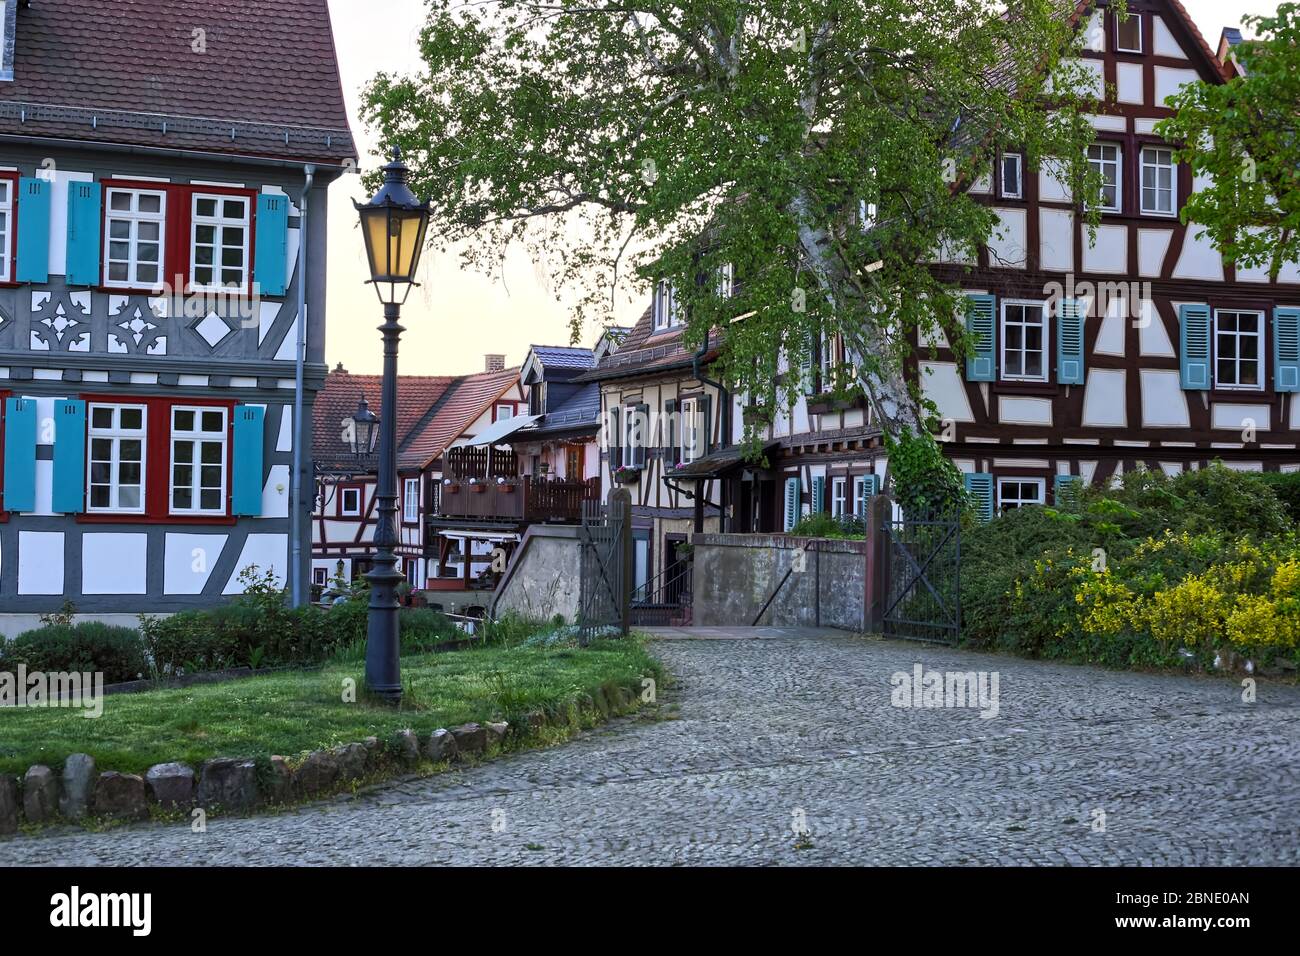 Historiische Altstadt in Deutschland mit Fachwerkhäusern mit Abendstimmung. Foto Stock